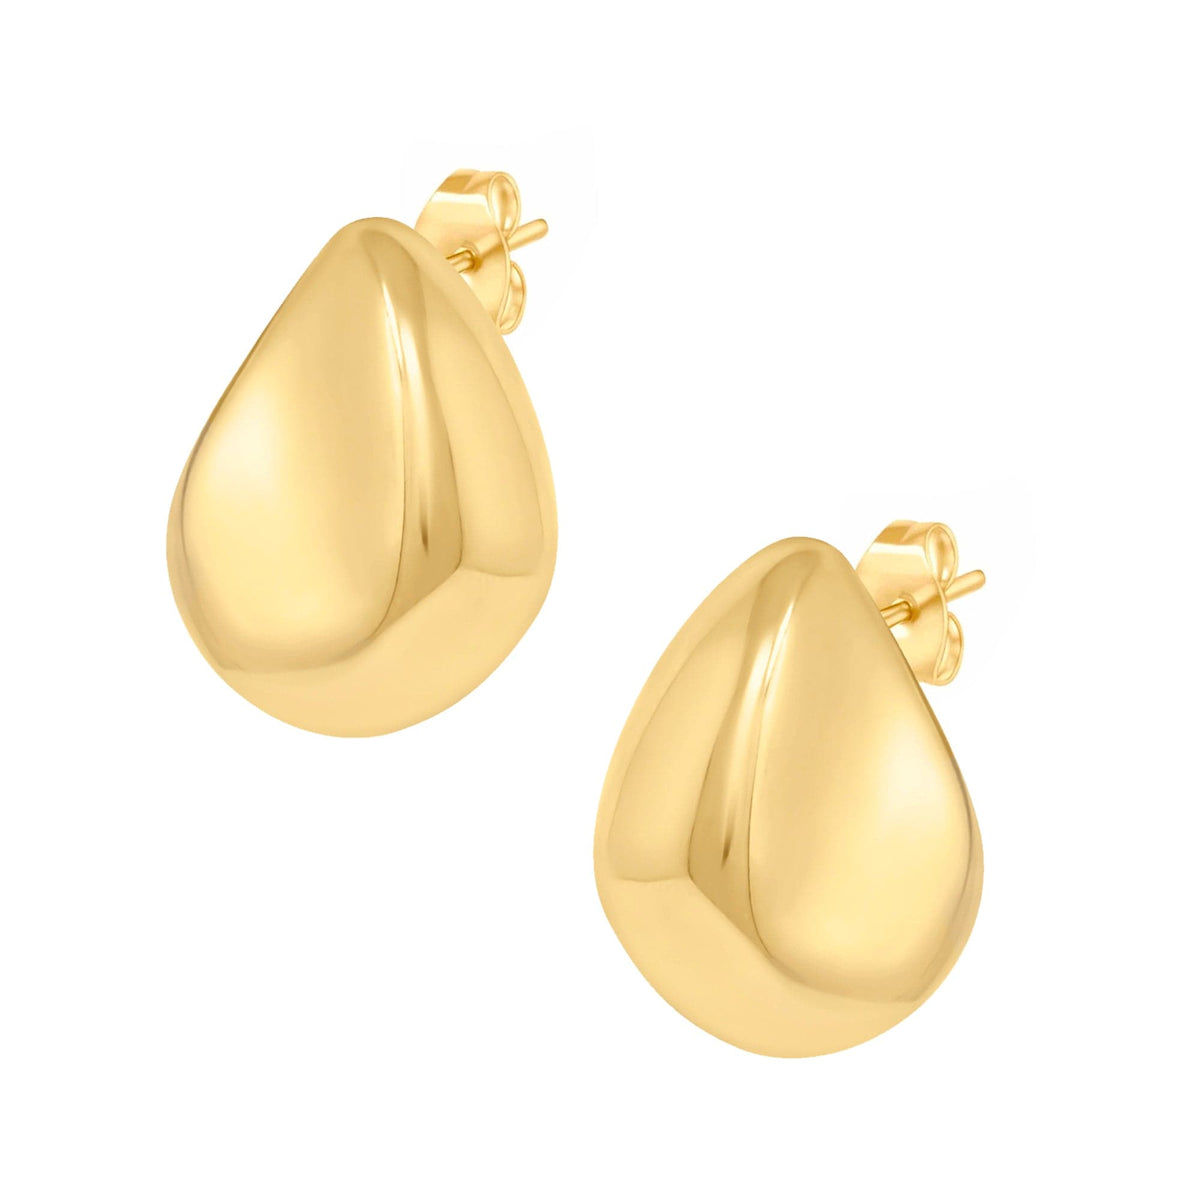 BOHOMOON Stainless Steel Glory Stud Earrings Gold